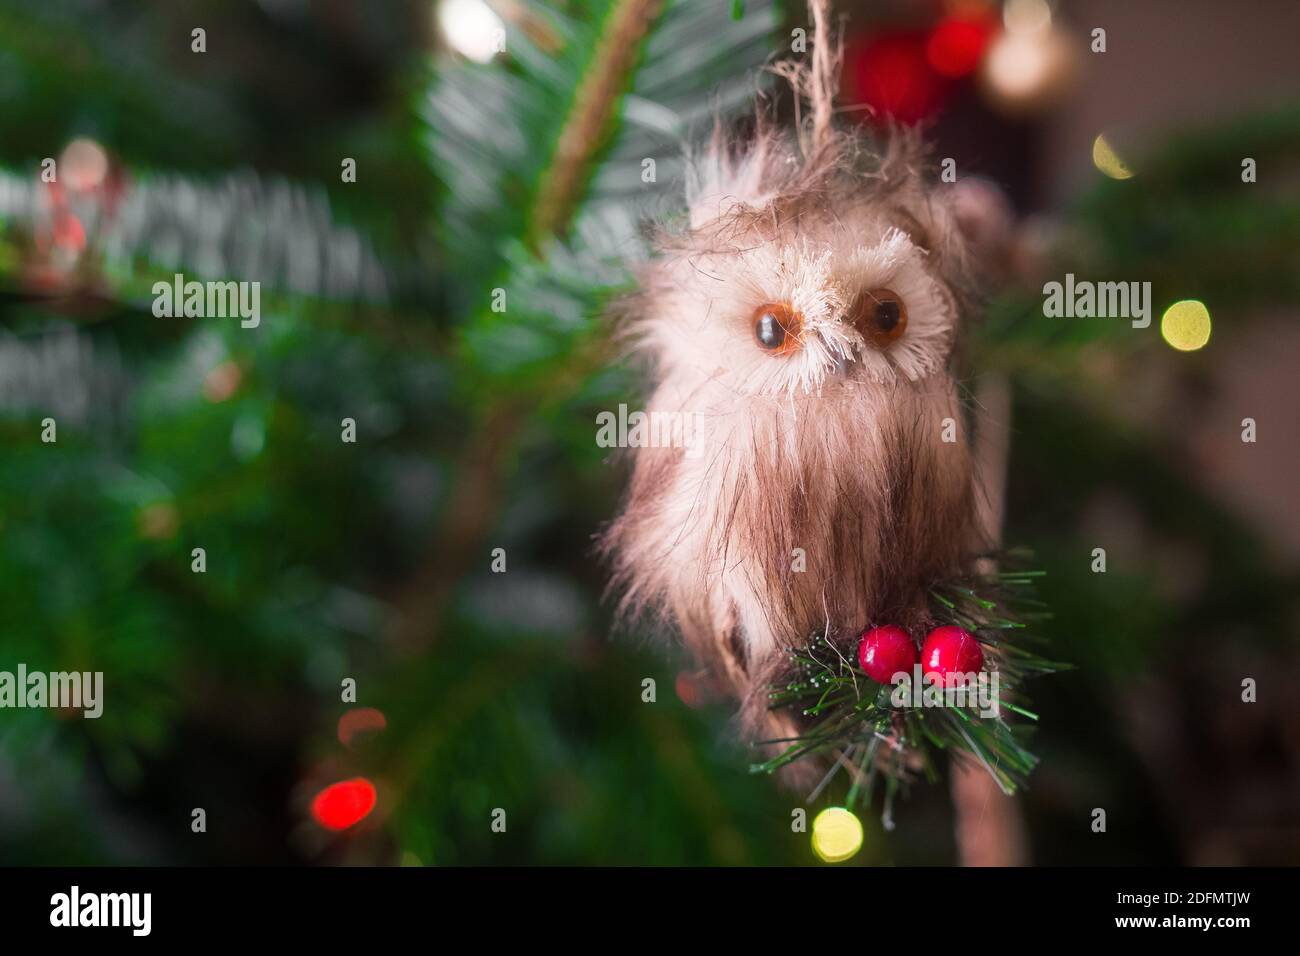 Eule Weihnachtsschmuck. Schöne Nahaufnahme einer kleinen Eule, die auf die Kamera schaute und an einem Weihnachtsbaum hing. Sieht aus wie ein ausgestopftes Tier. Stockfoto